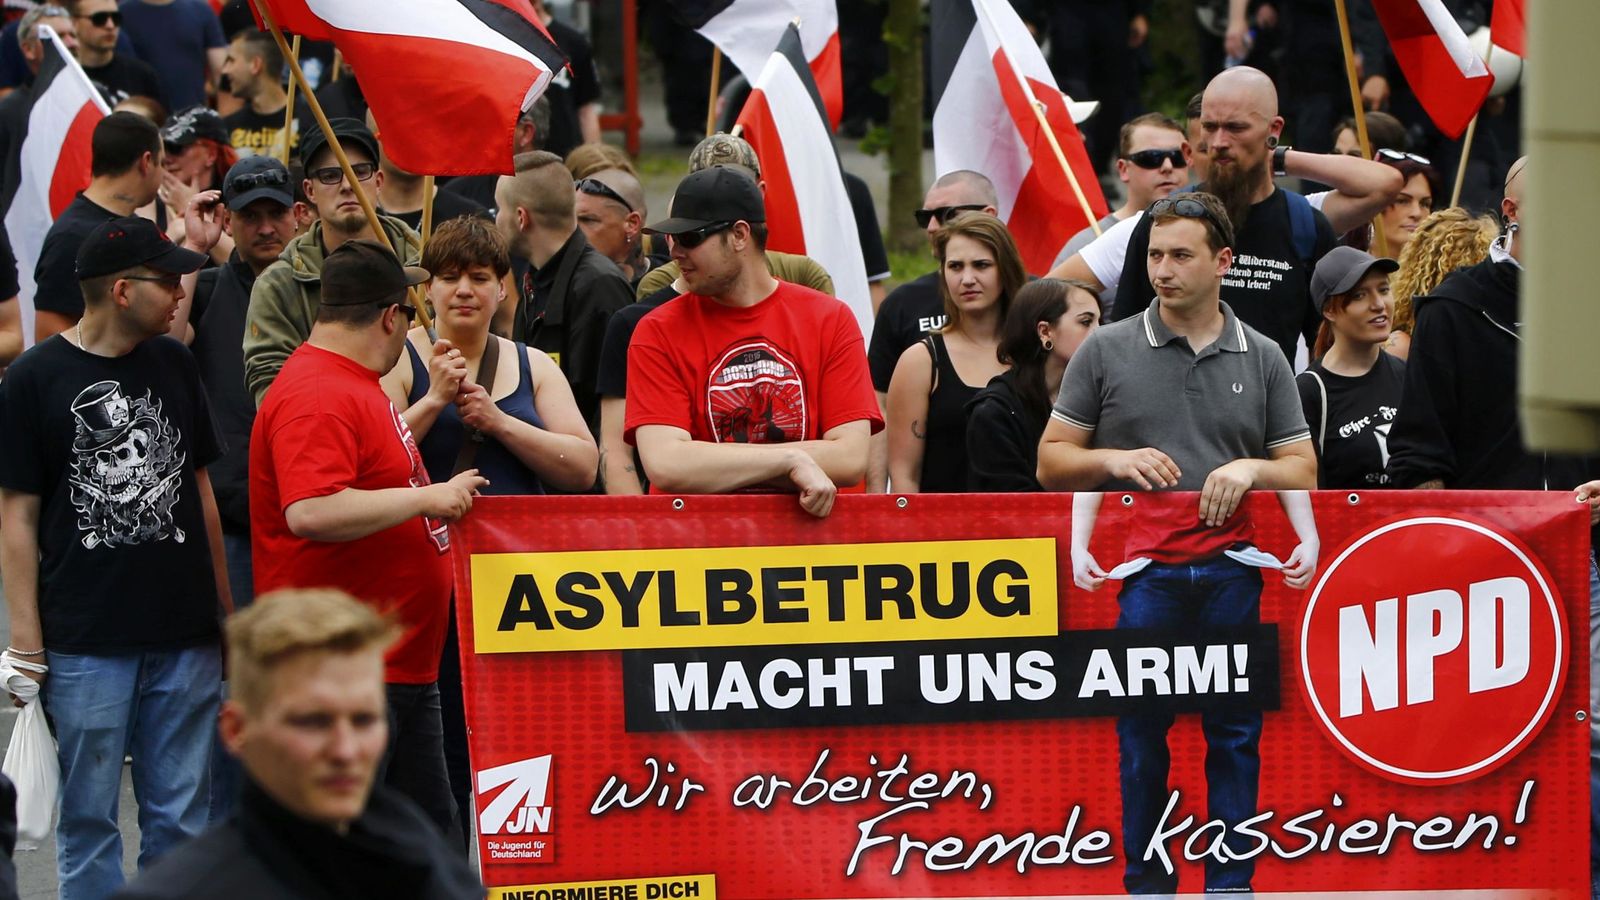 Foto: Simpatizantes del NPD durante una protesta contra la llegada de refugiados, en Dortmund, Alemania (Reuters).